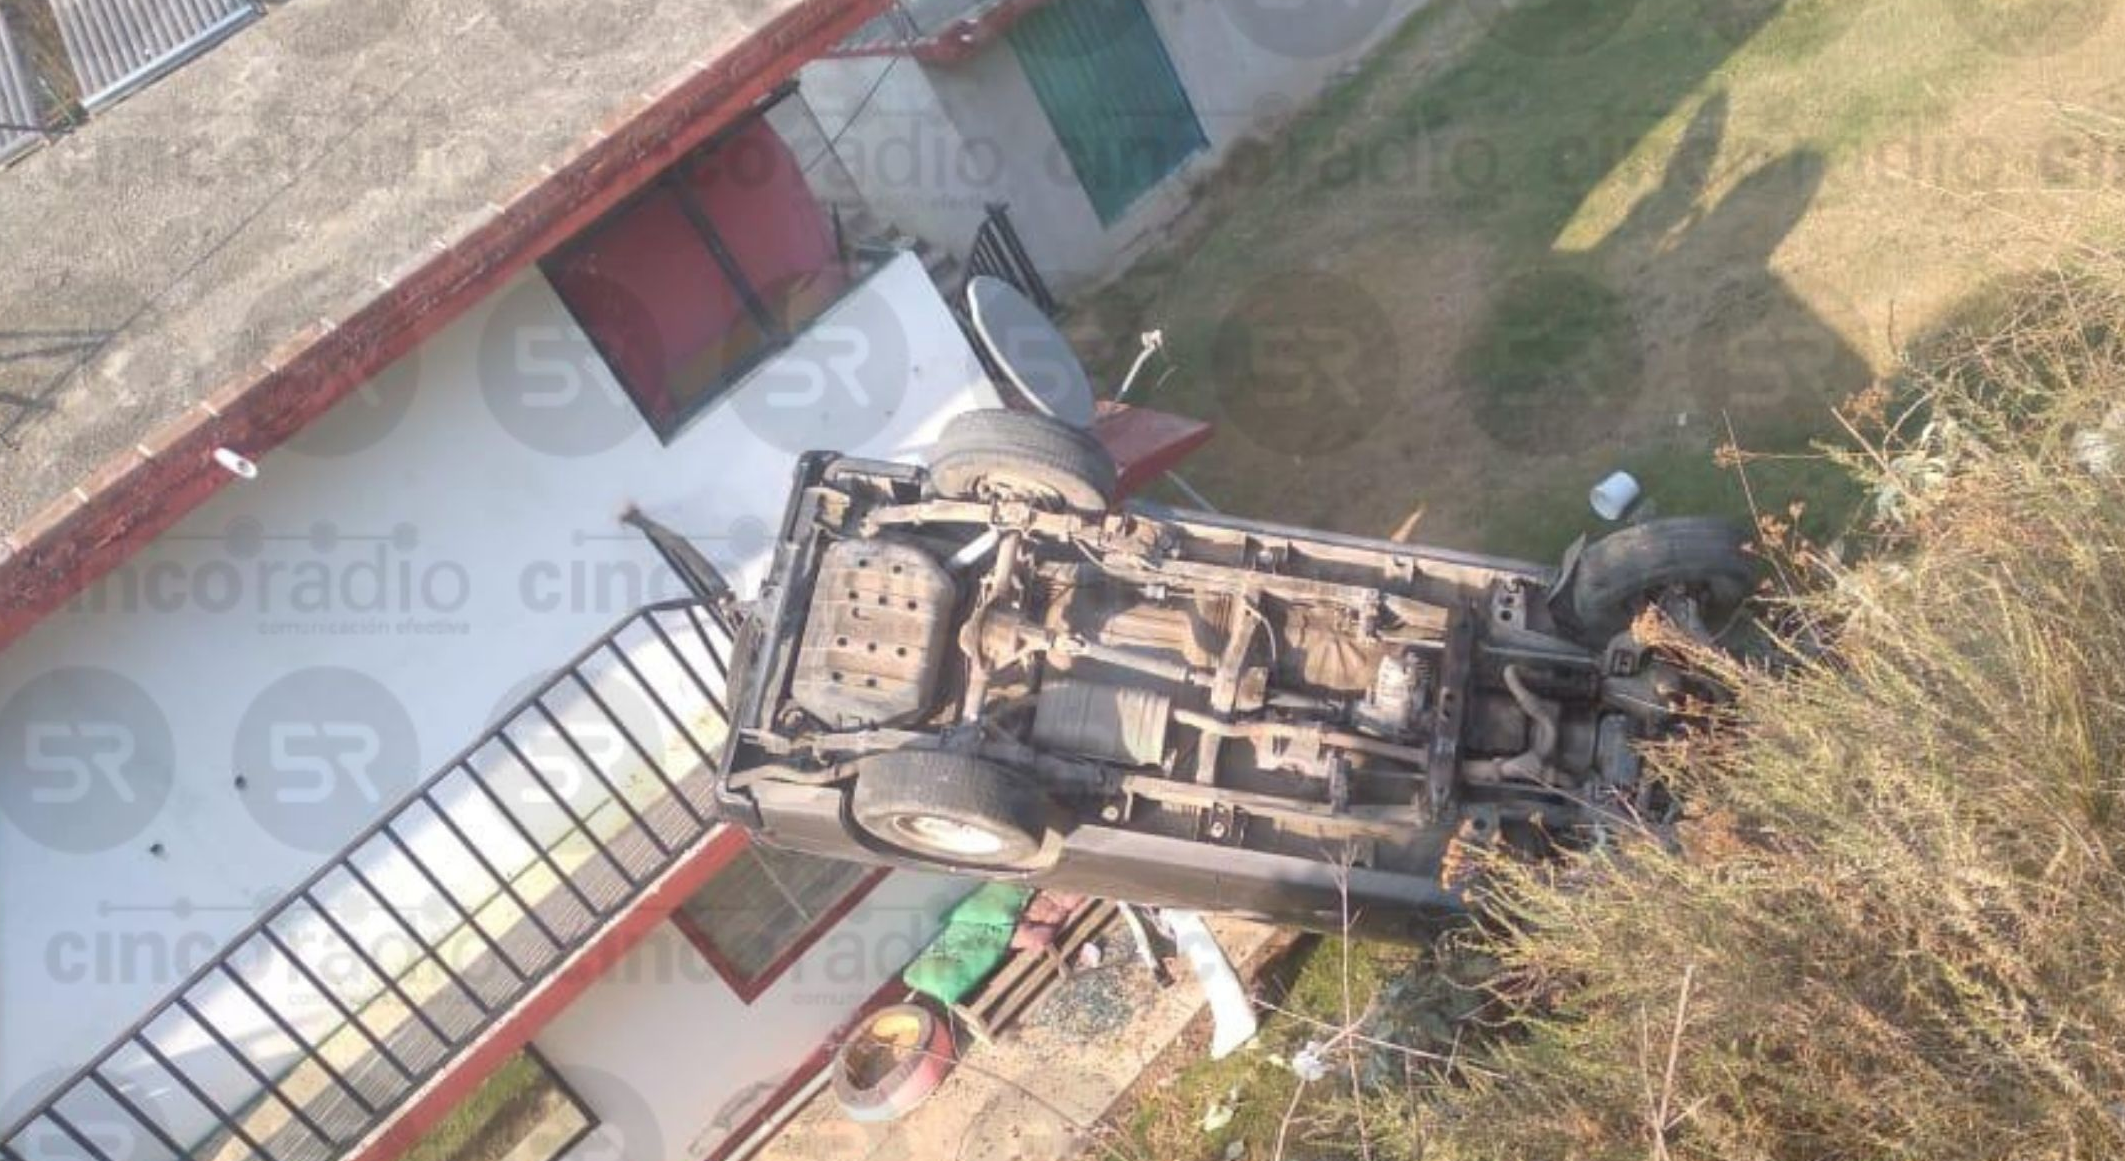 #REPORTE Camioneta cae sobre una casa y deja cinco lesionados